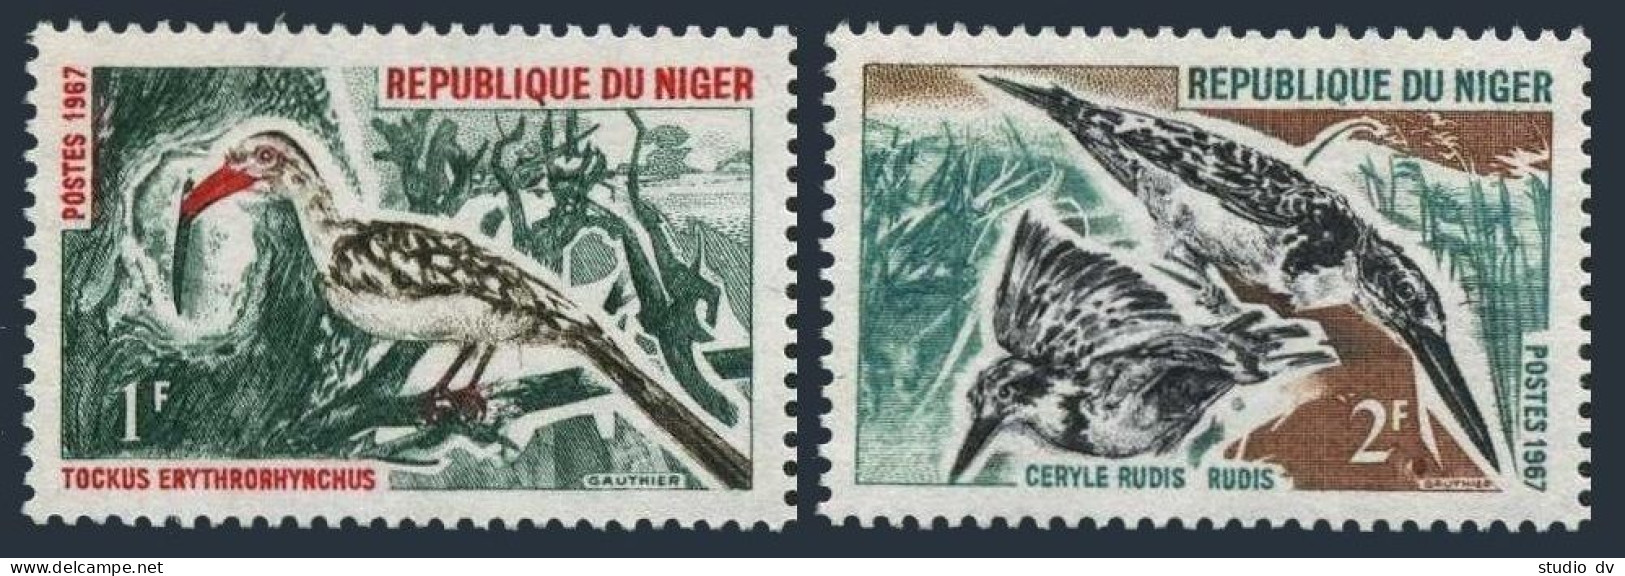 Niger 184-185, MNH. Michel 149-150. Birds 1967. Hornbill, Pied Kingfisher. - Niger (1960-...)